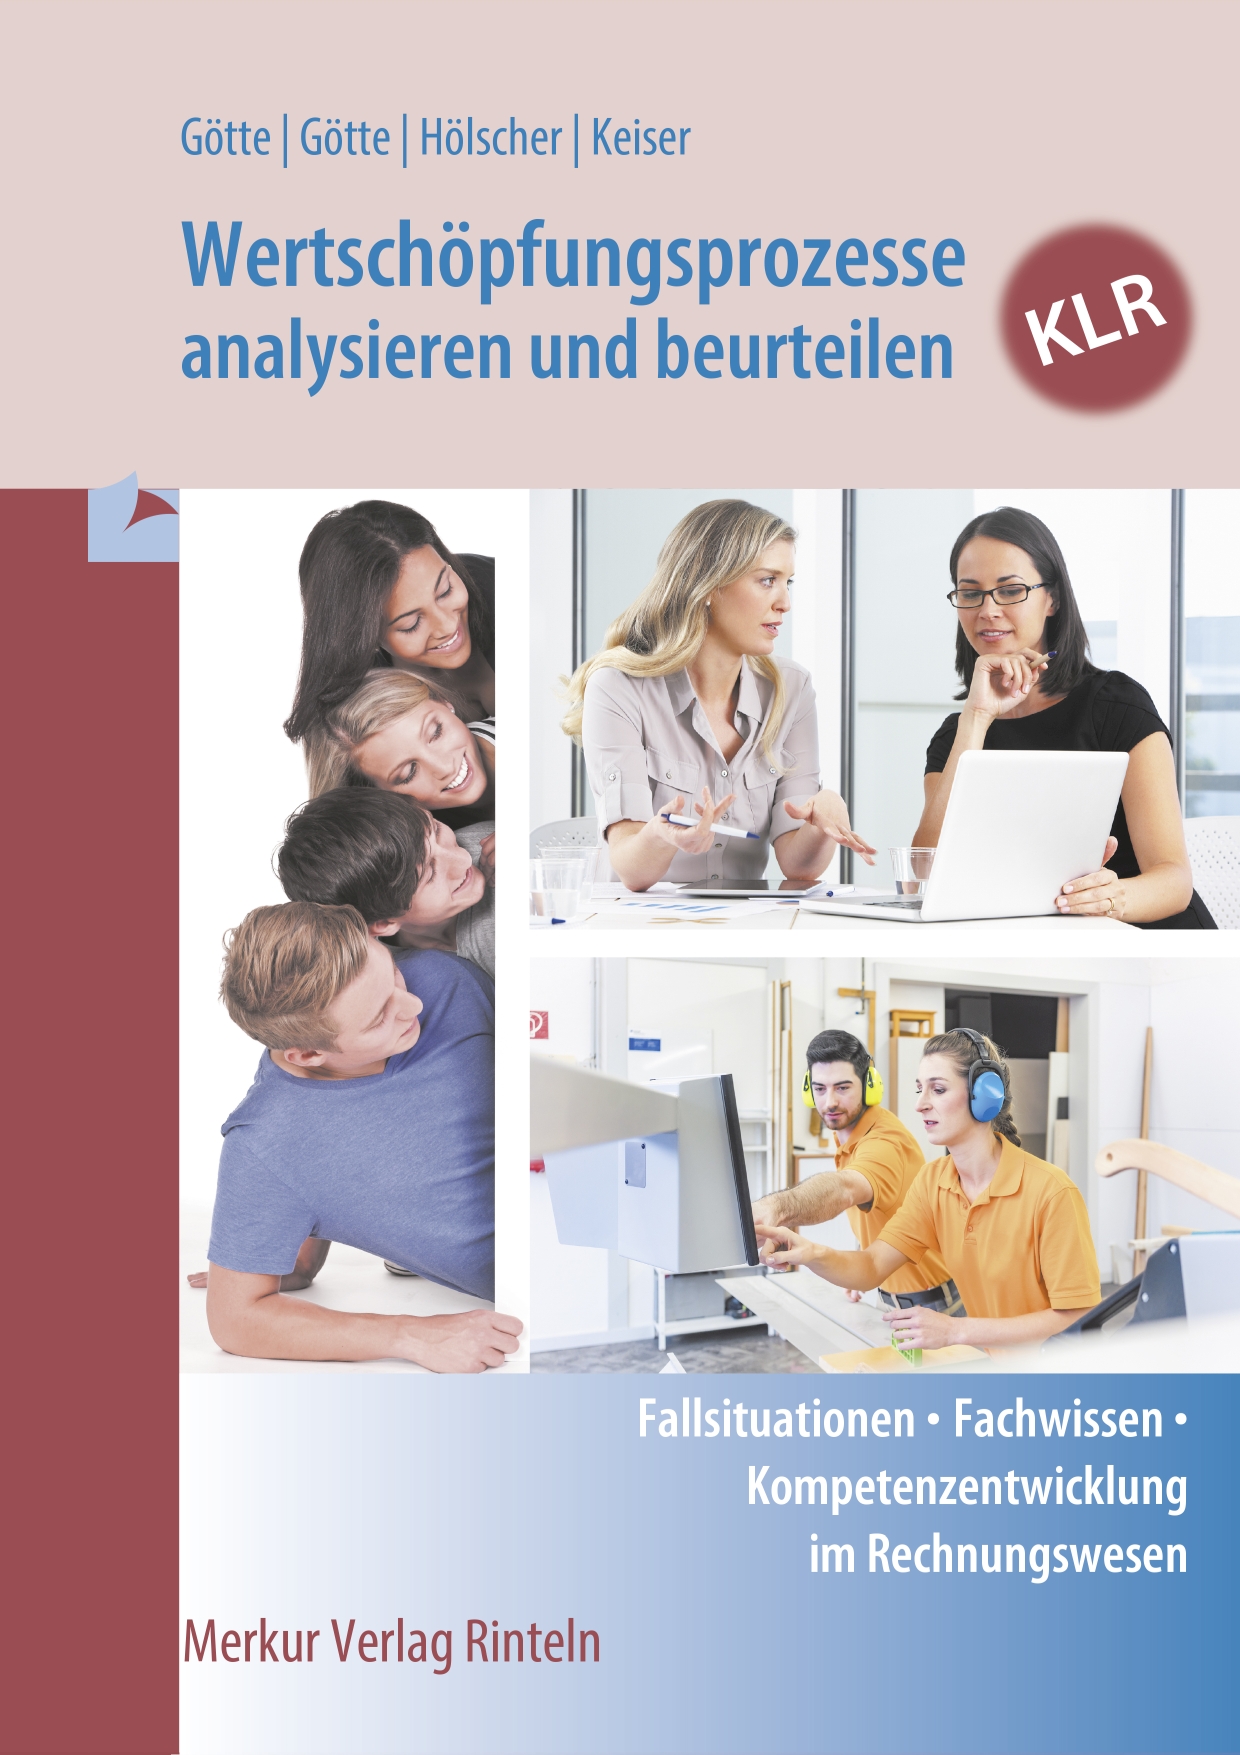 Wertschöpfungsprozesse analysieren und beurteilen - KLR Fallsituationen - Fachwissen - Kompetenzentwicklung im Rechnungswesen